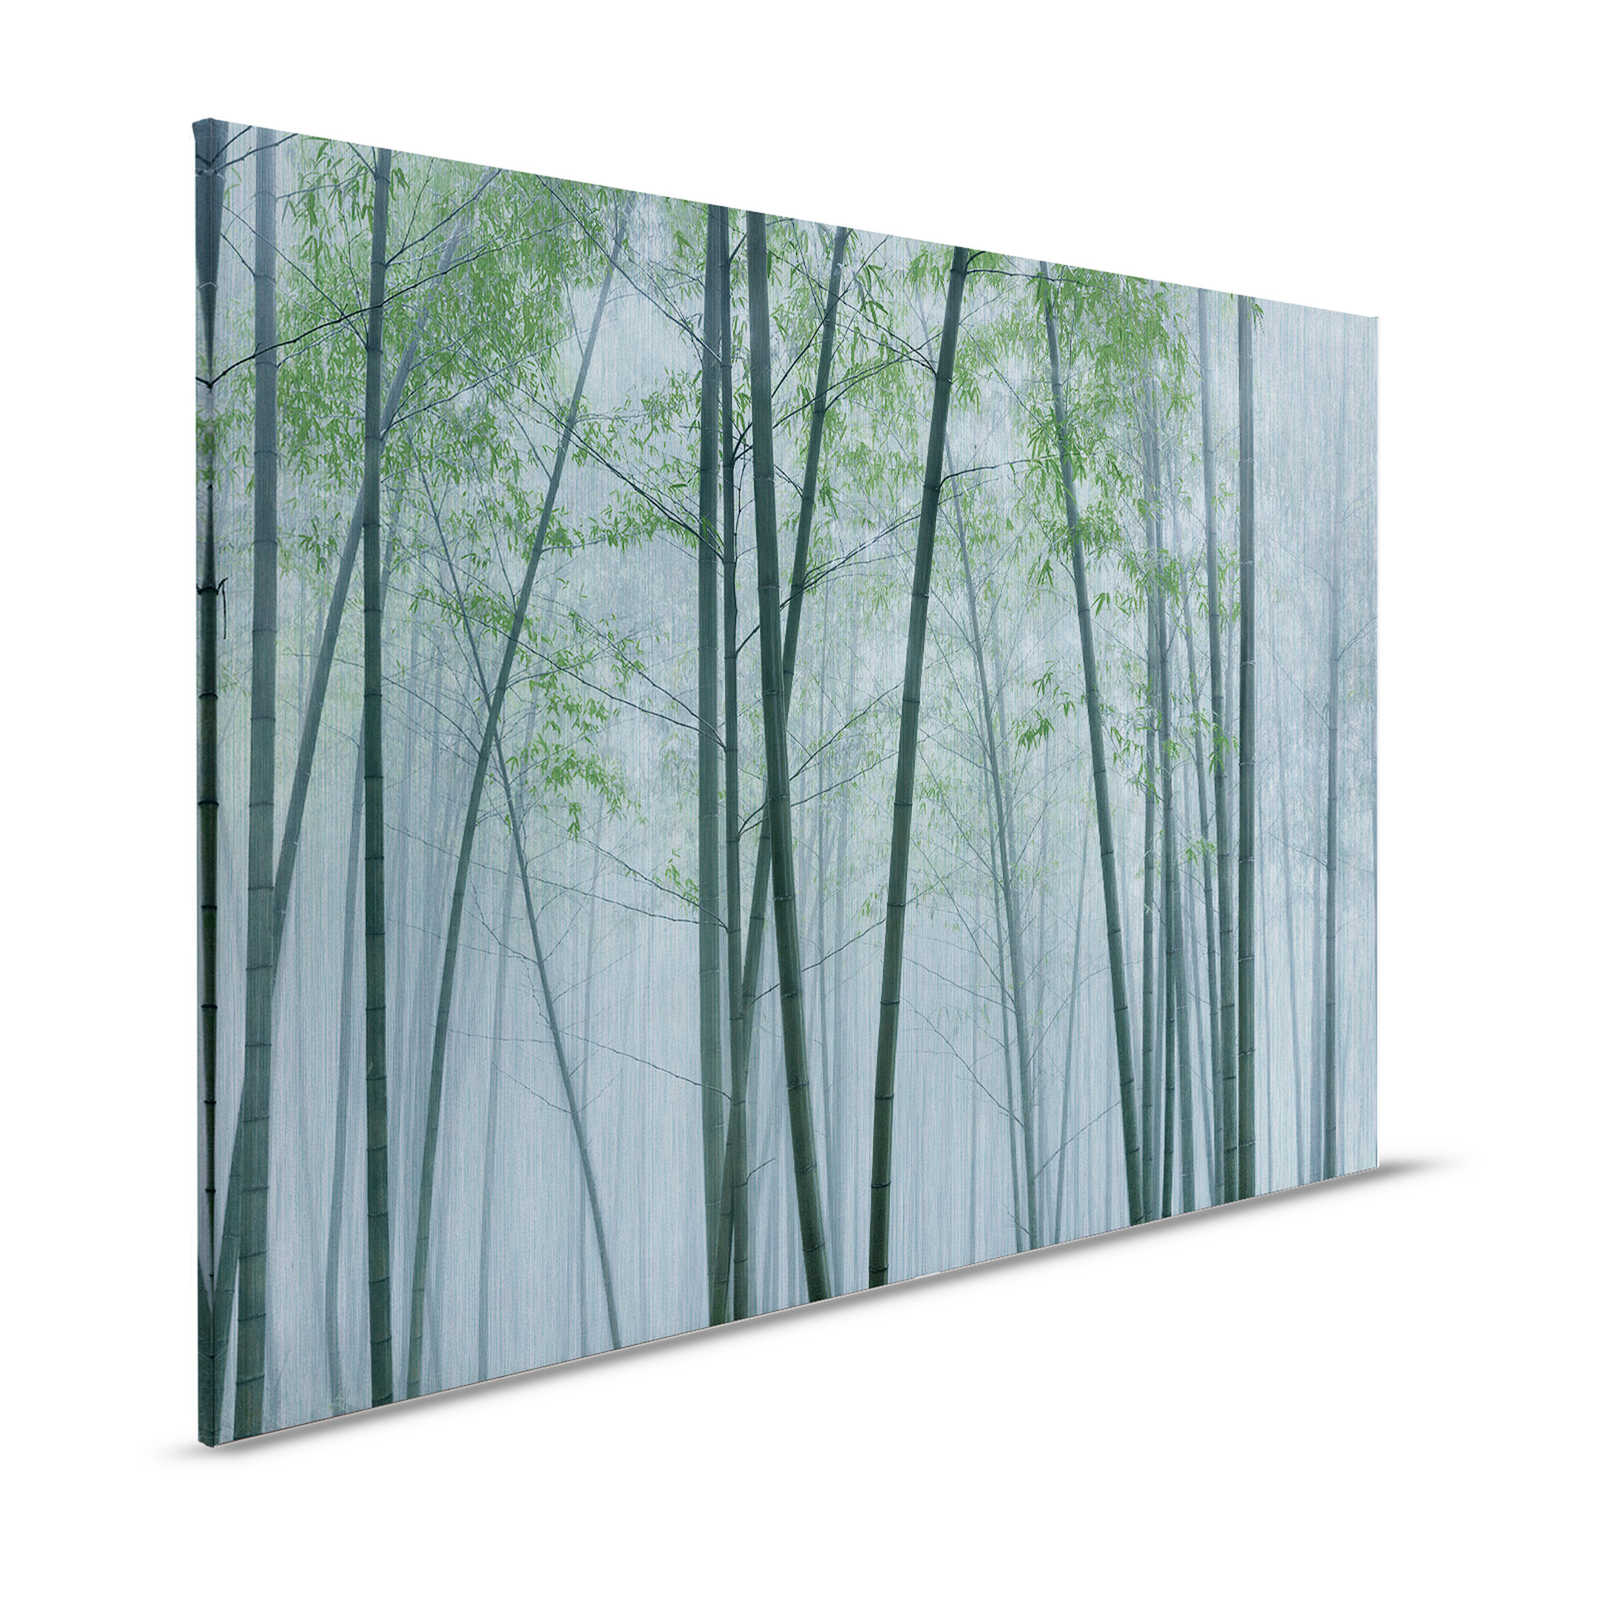 In de Bamboe 2 - Canvas schilderij Bamboebos bij zonsopgang - 1.20 m x 0.80 m
